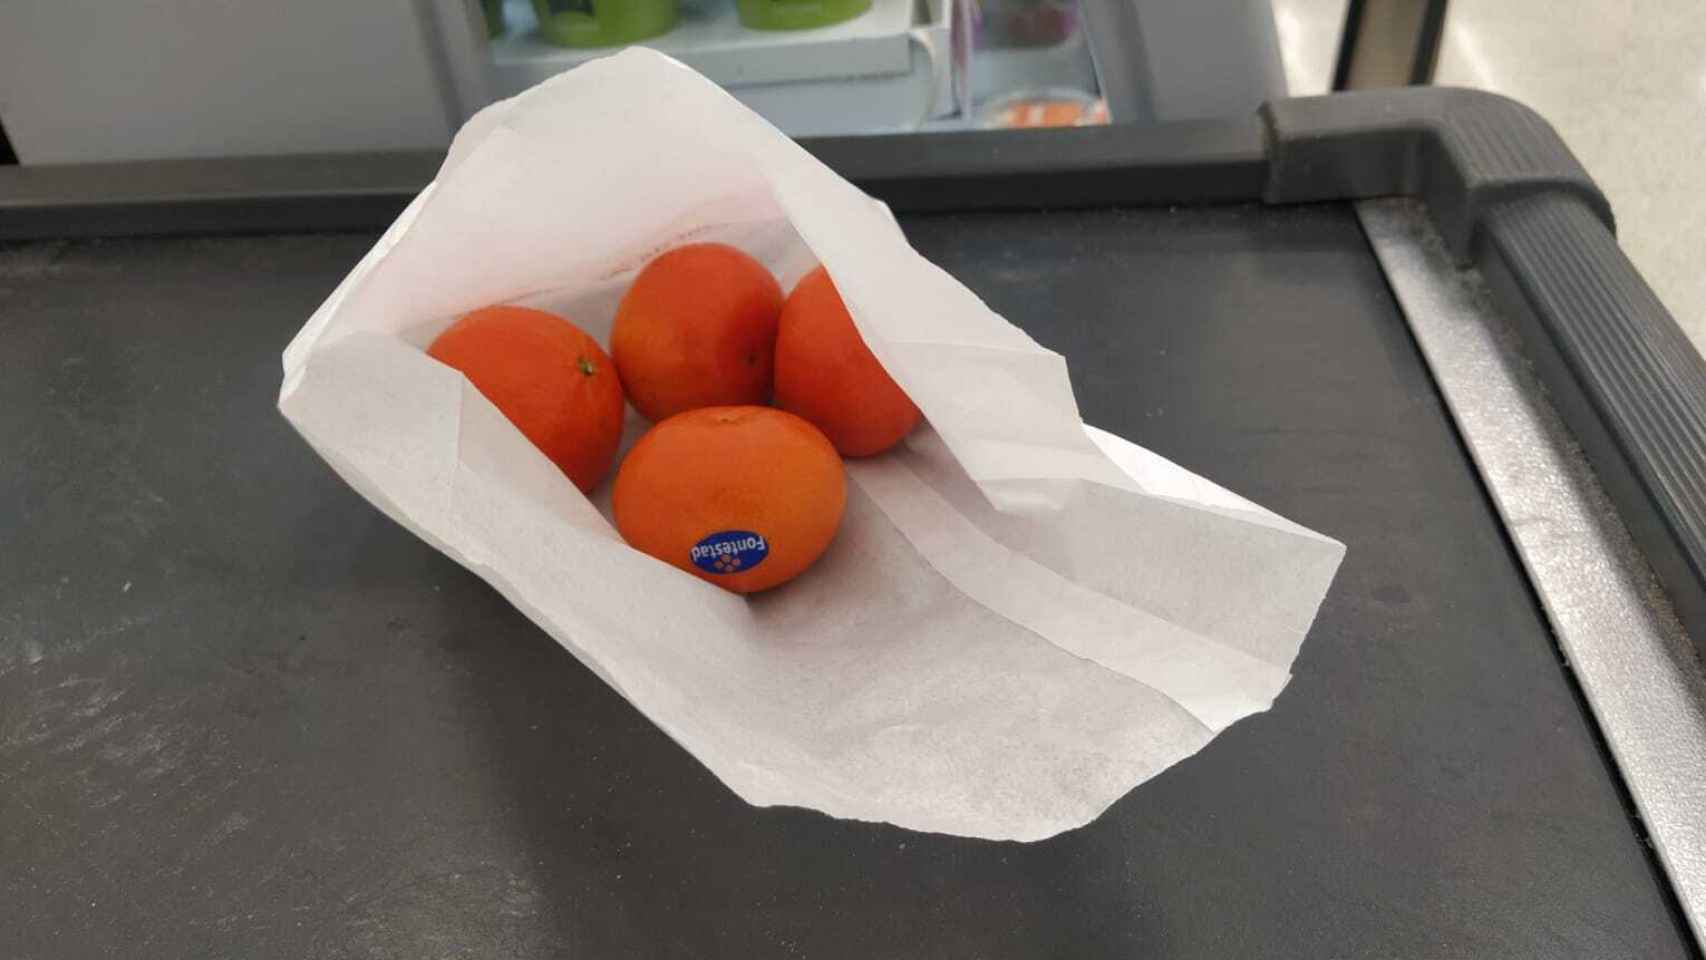 Las mandarinas dentro de una bolsa de papel, destinada normalmente a la bollería.